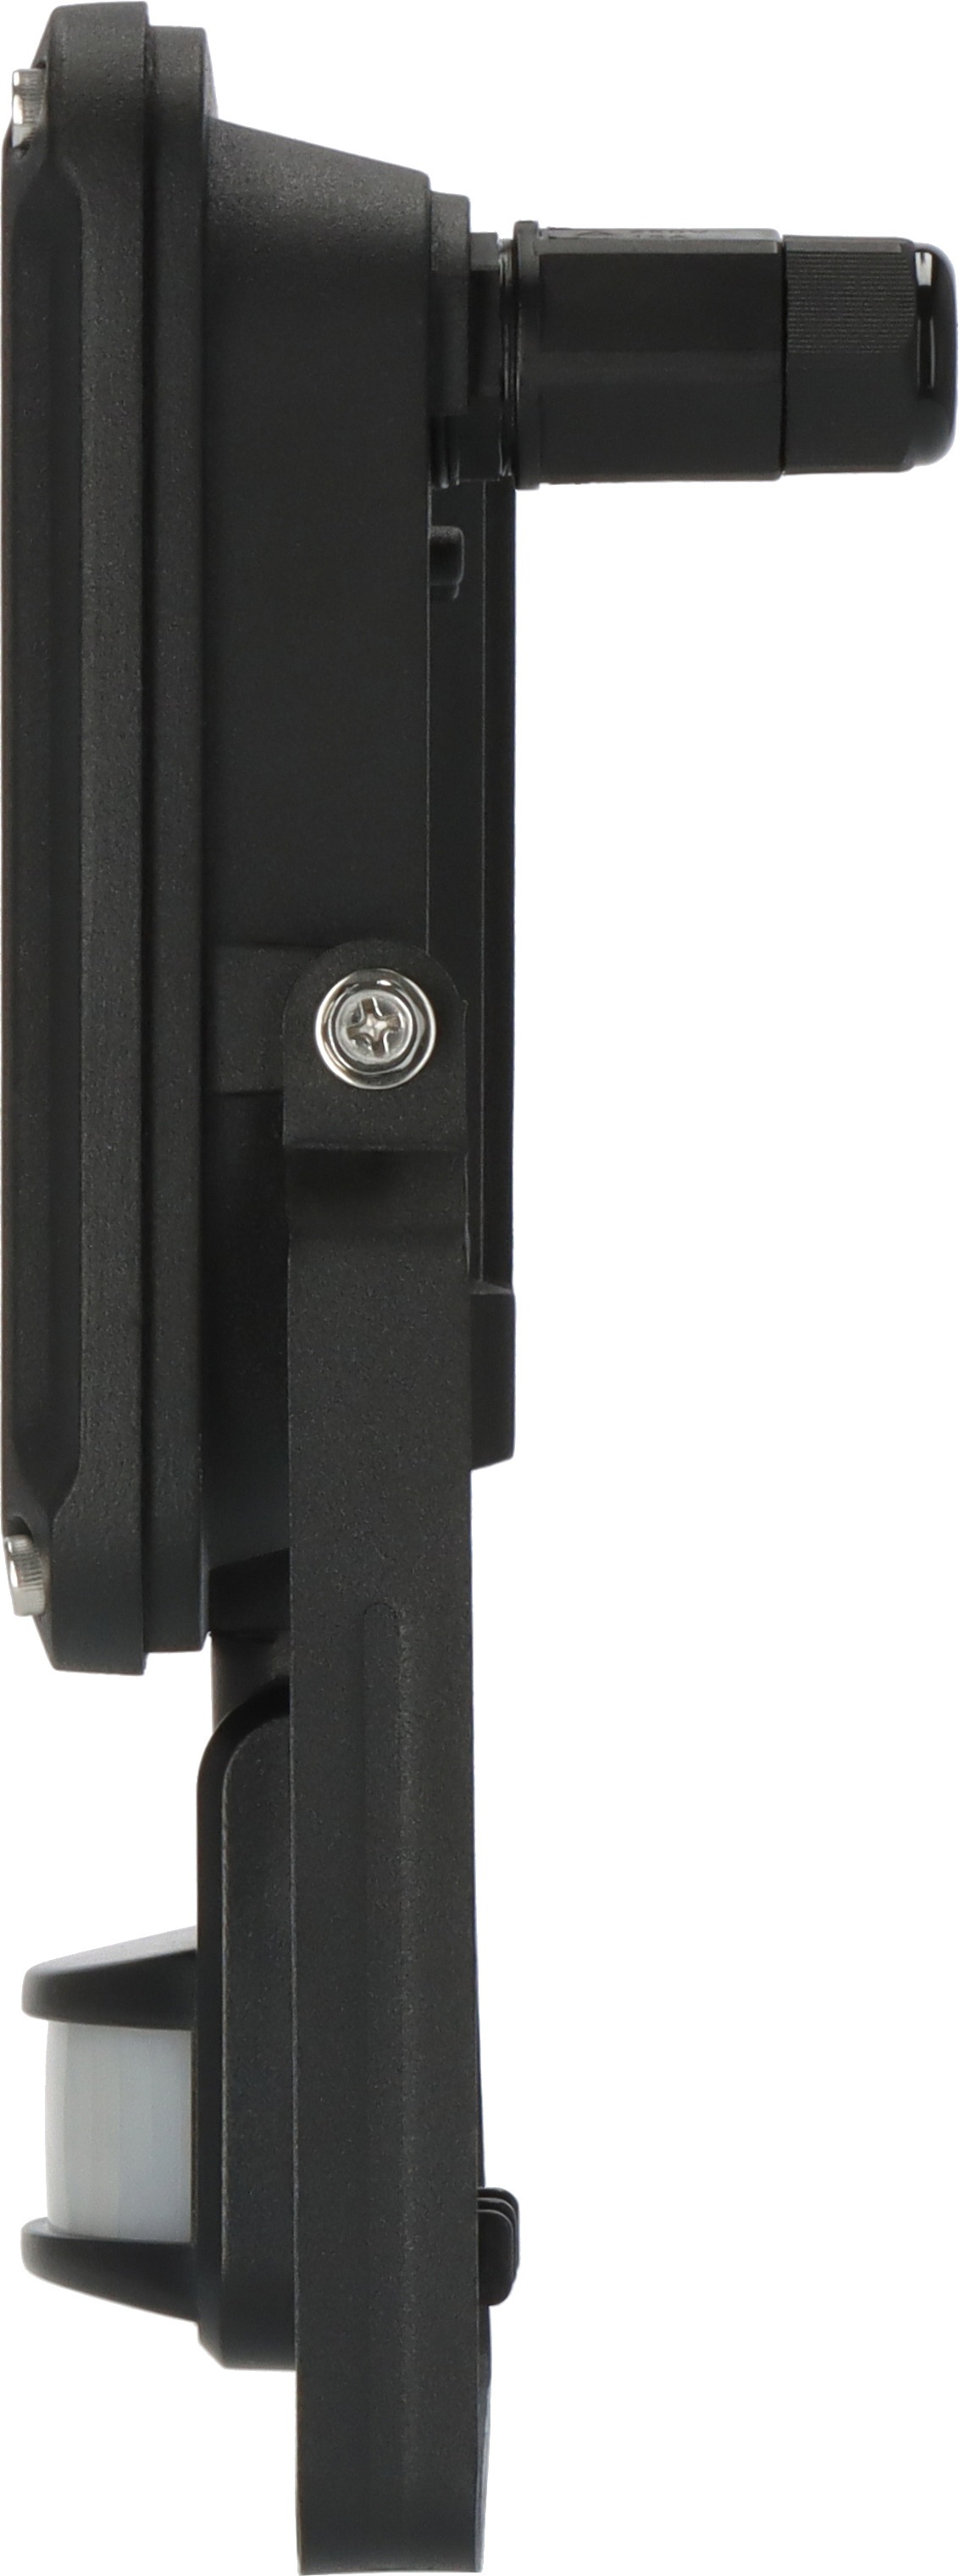 Brennenstuhl LED Wandstrahler »JARO 4060 P«, mit Bewegungsmelder und Dämmerungssensor